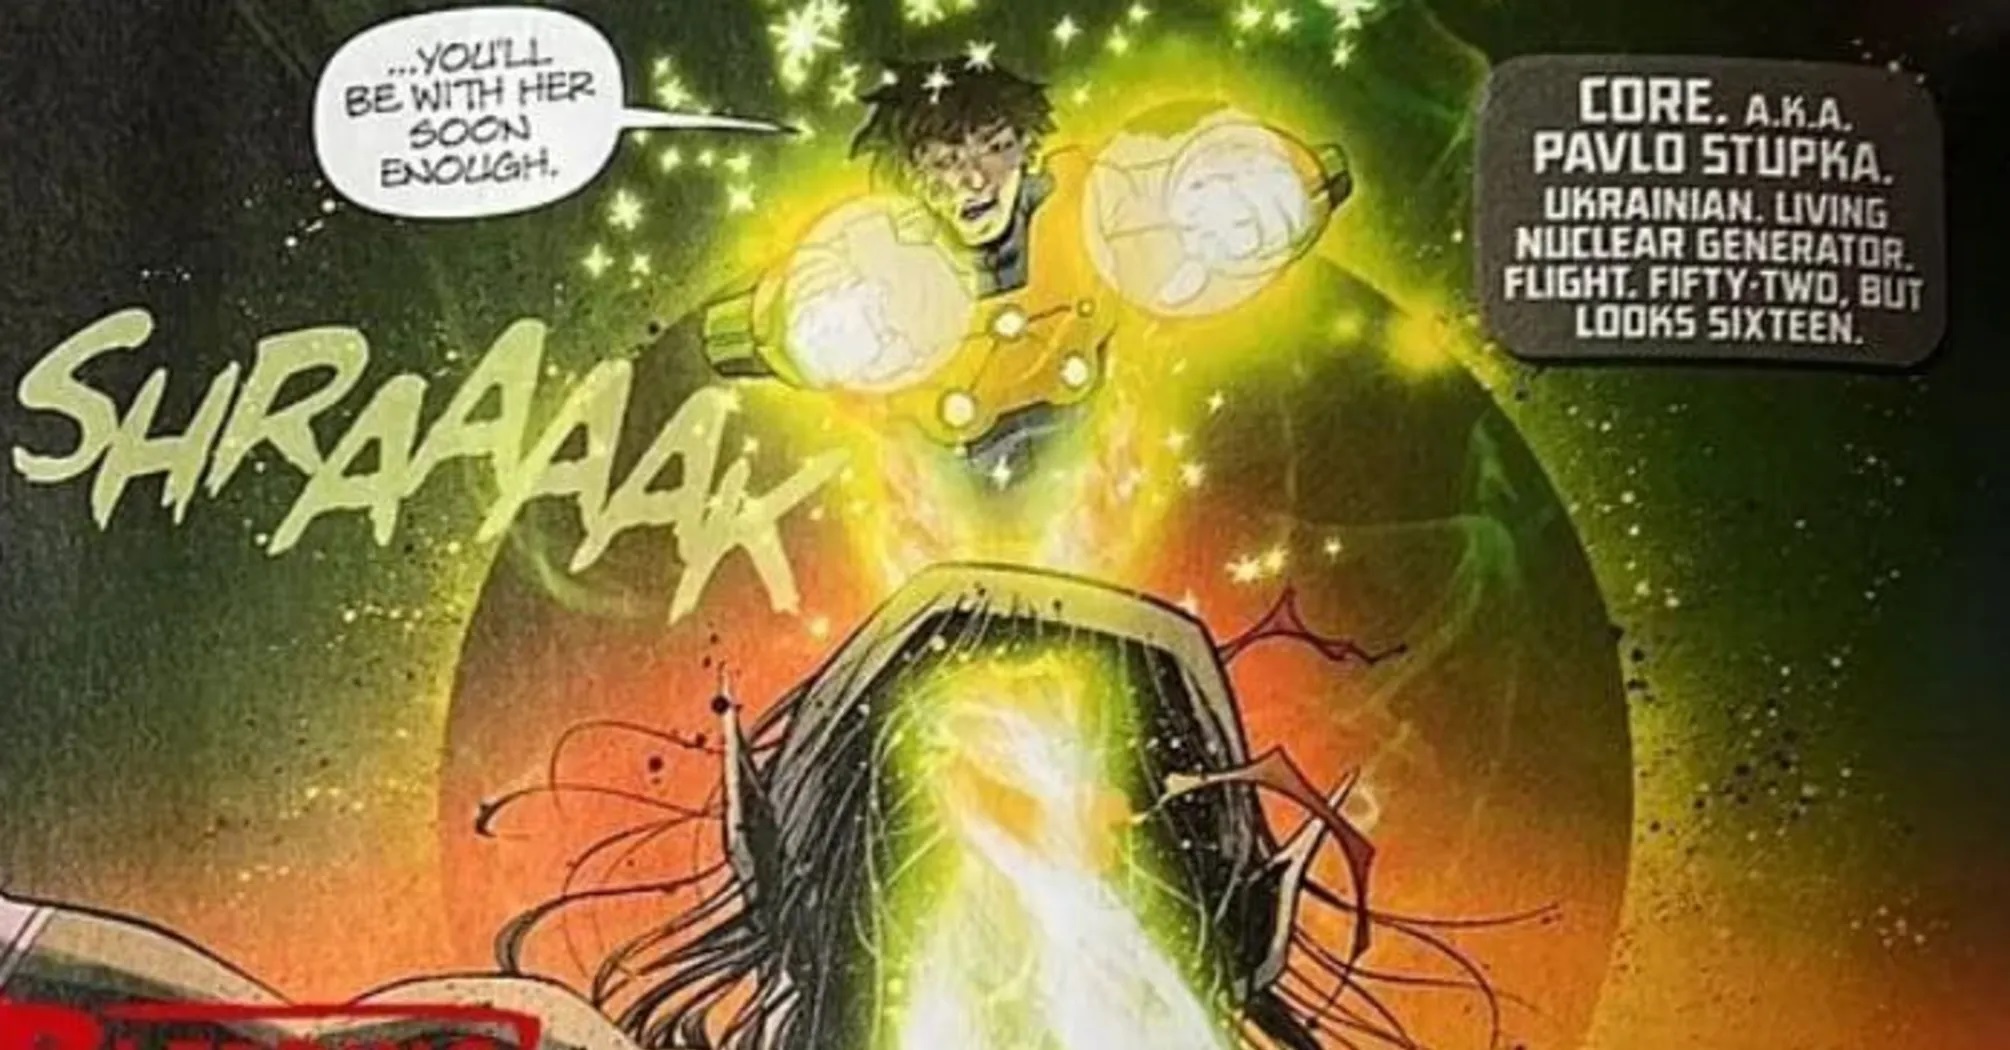 "Живий ядерний генератор": новим супергероєм коміксів DC став українець Павло Ступка